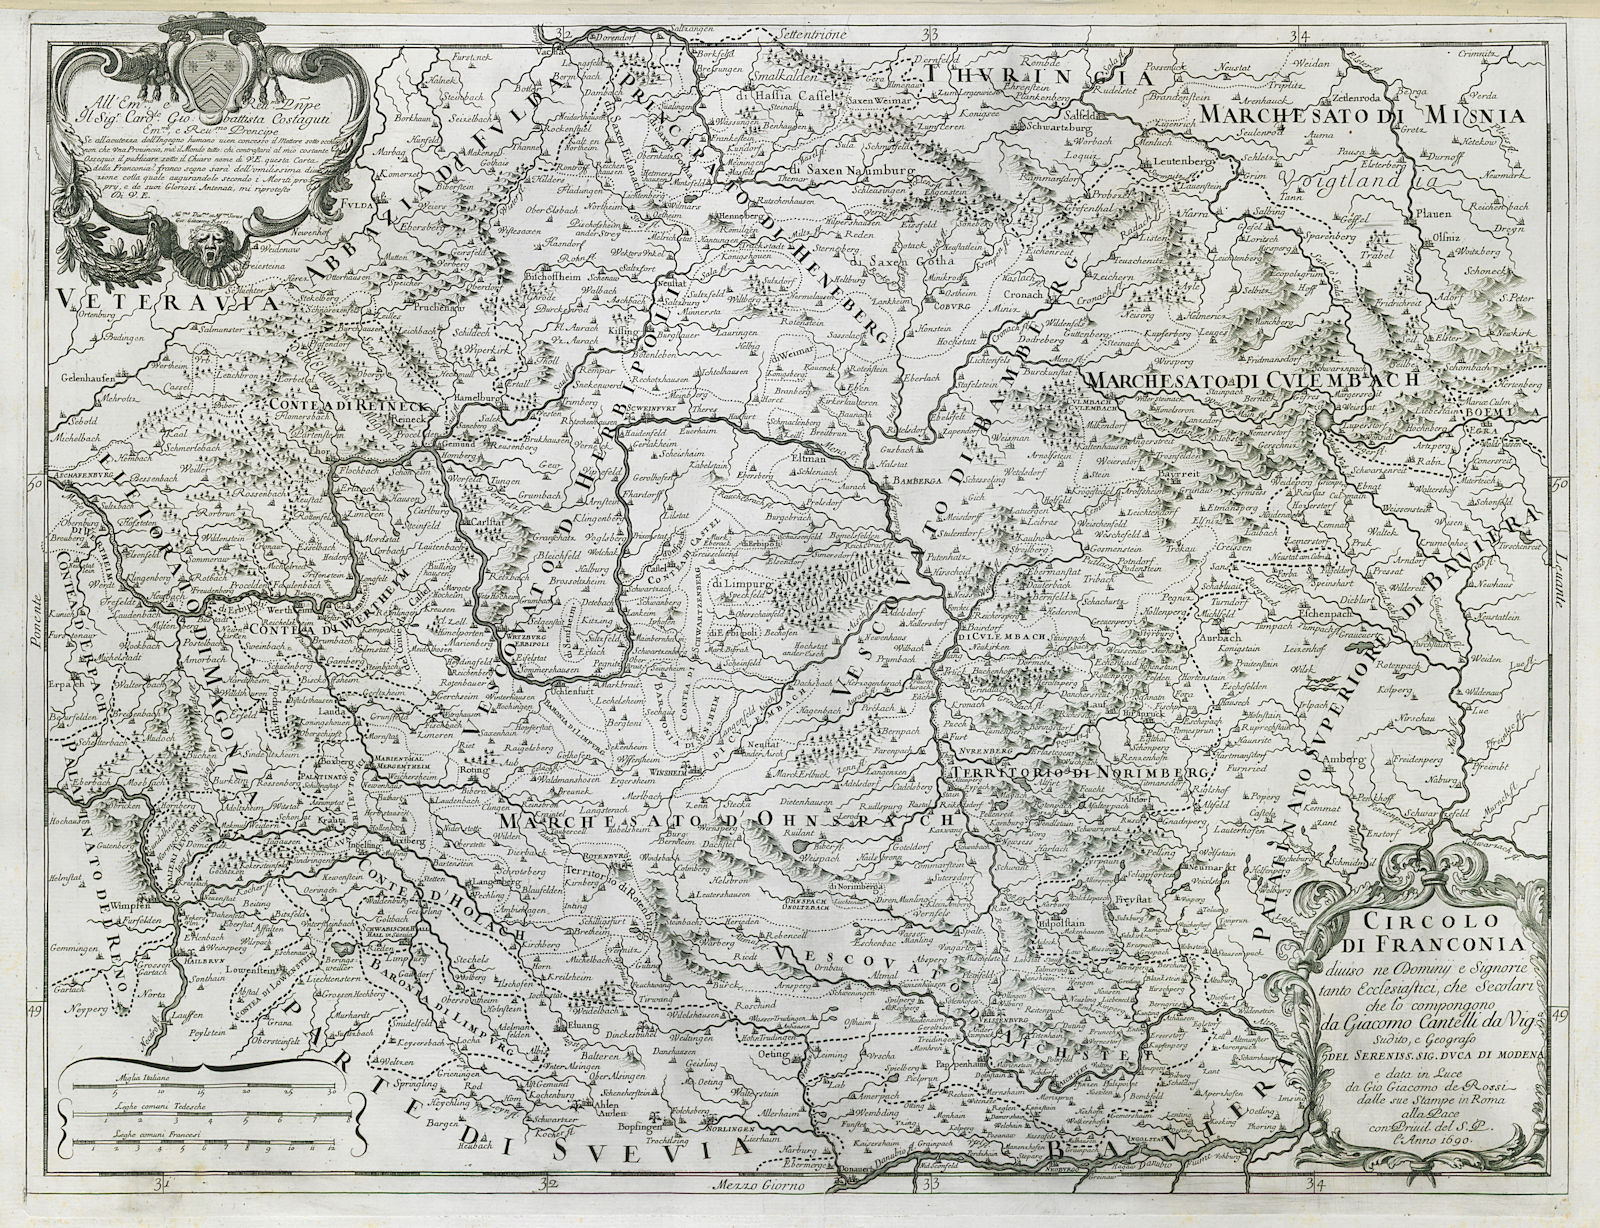 Circolo di Franconia. Northern Bavaria. DE ROSSI / CANTELLI DA VIGNOLA 1690 map